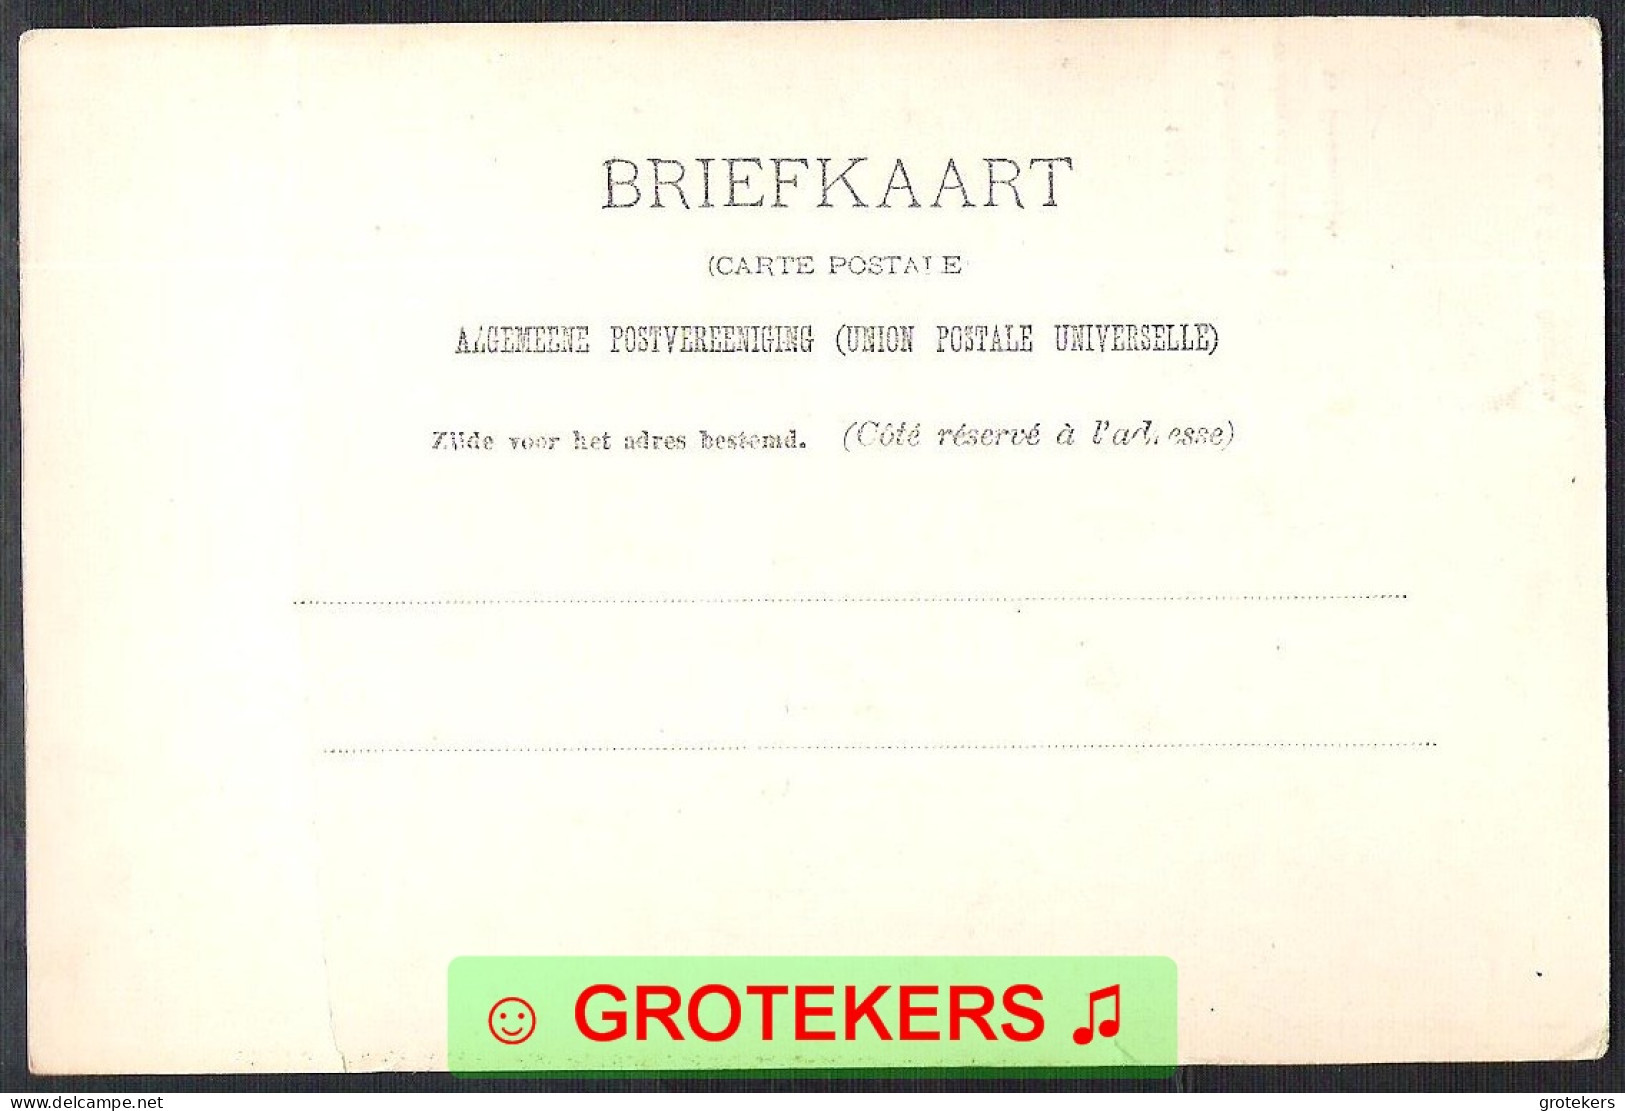 OUDEWATER Markt Geboortehuis Arminius Ca 1903 - Other & Unclassified